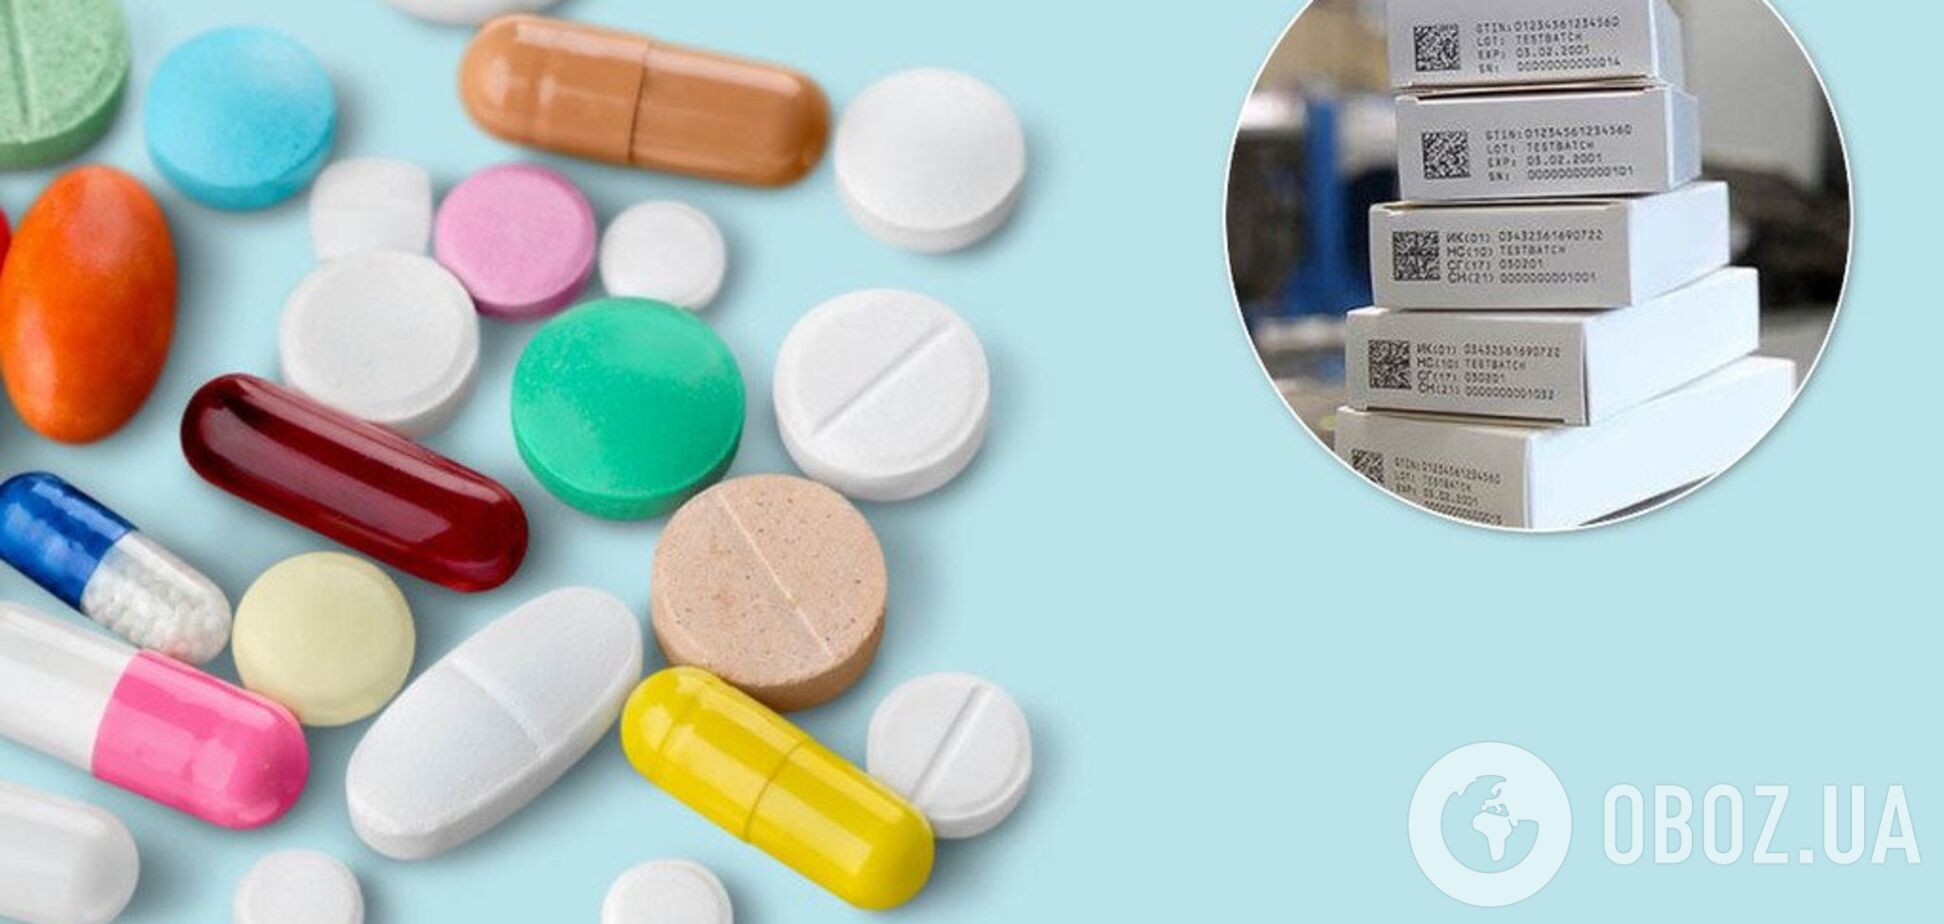 2D кодирование: как предотвратить фальсификацию лекарств